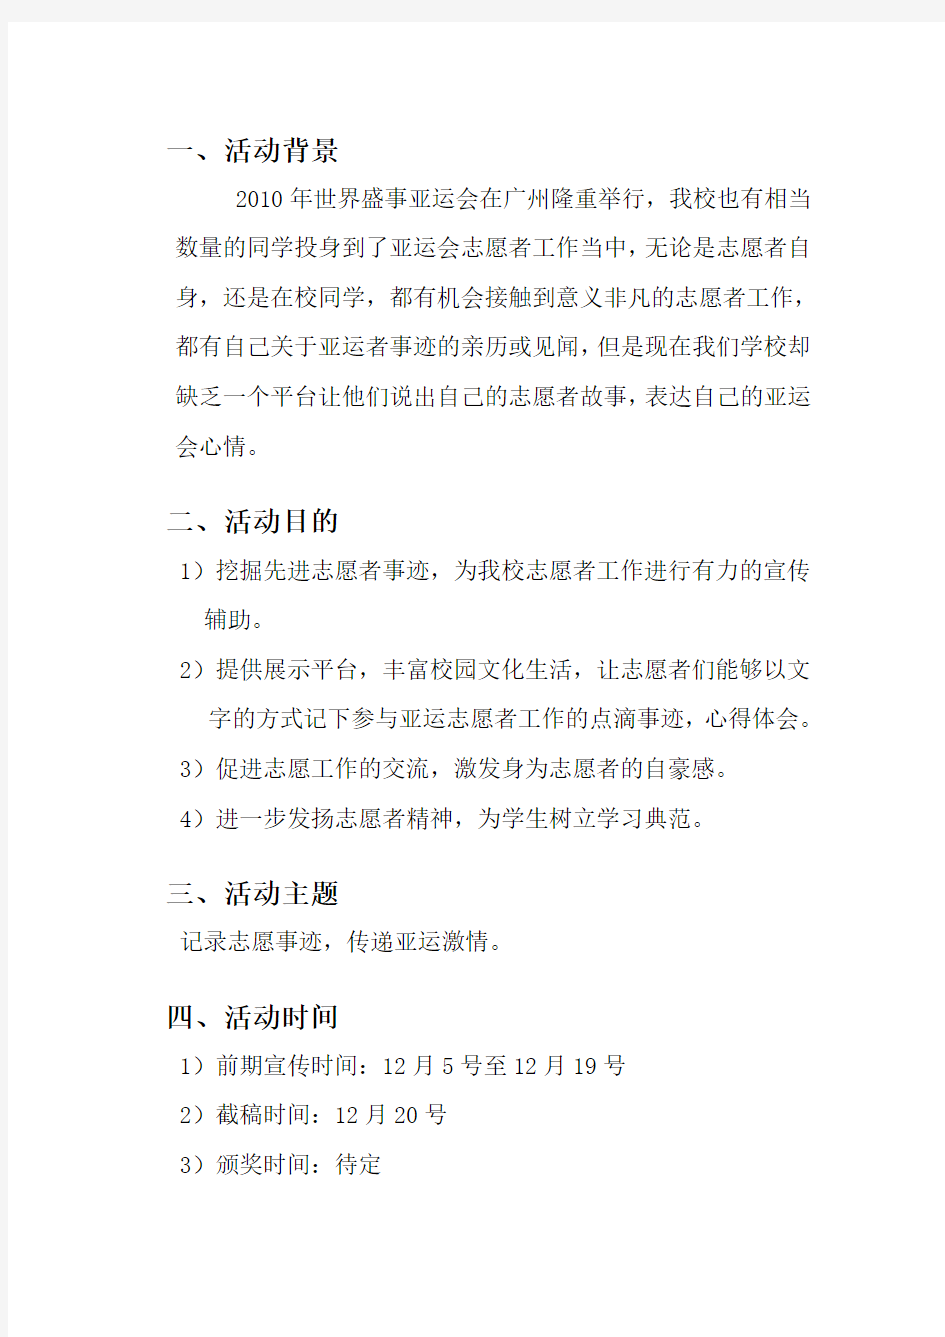 2010广州中医药大学亚运会志愿者事迹征文比赛策划书